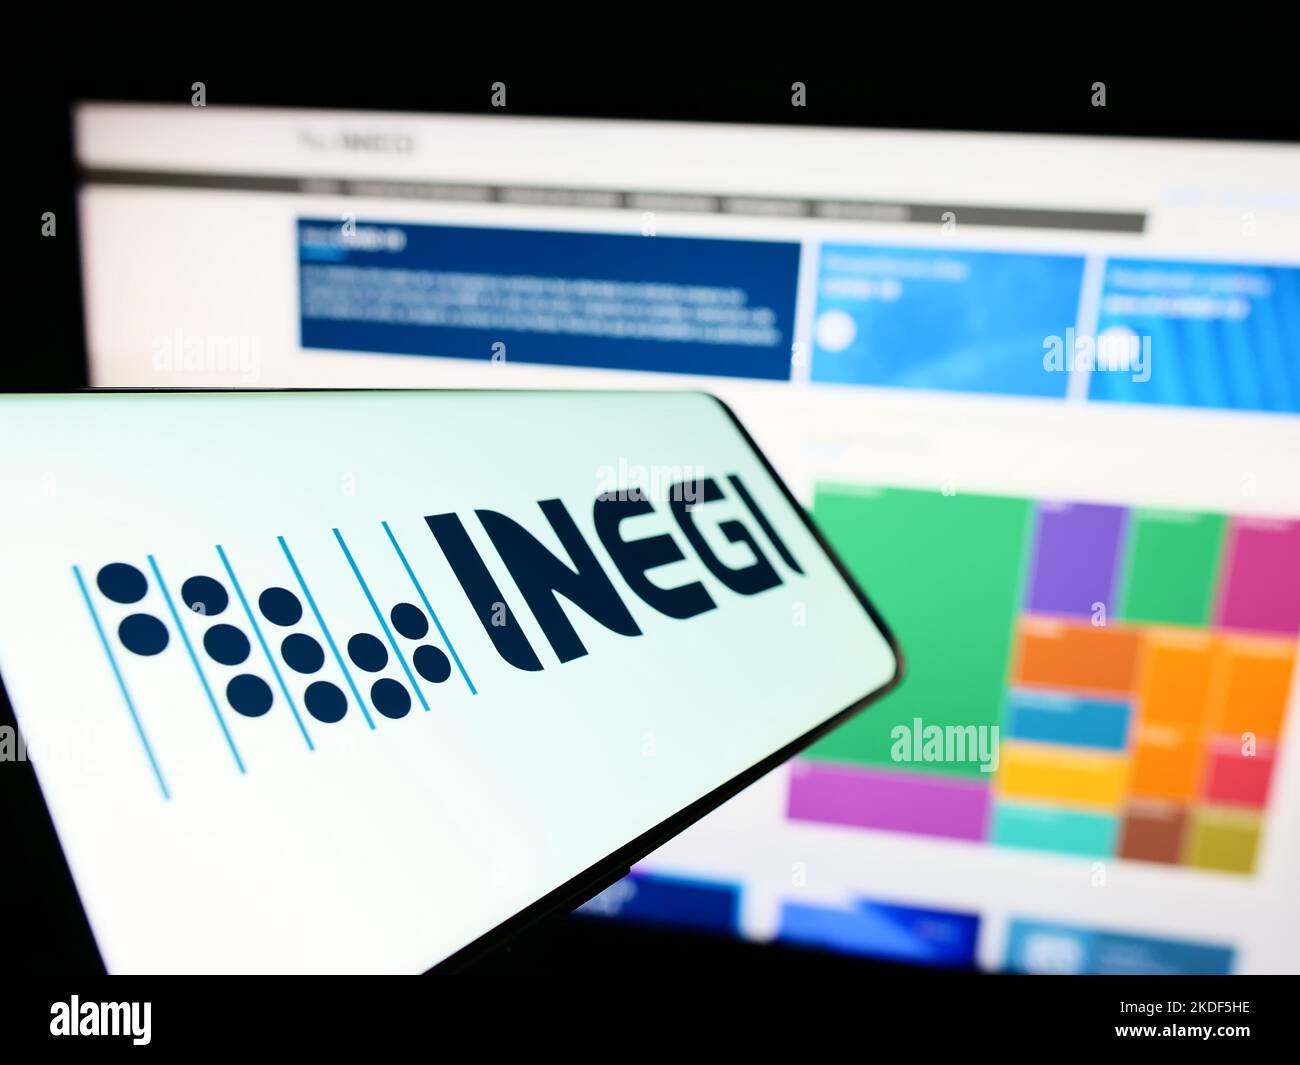 Cellulare con logo dell'agenzia di statistiche messicane INEGI sullo schermo di fronte al sito web. Messa a fuoco al centro a sinistra del display del telefono. Foto Stock